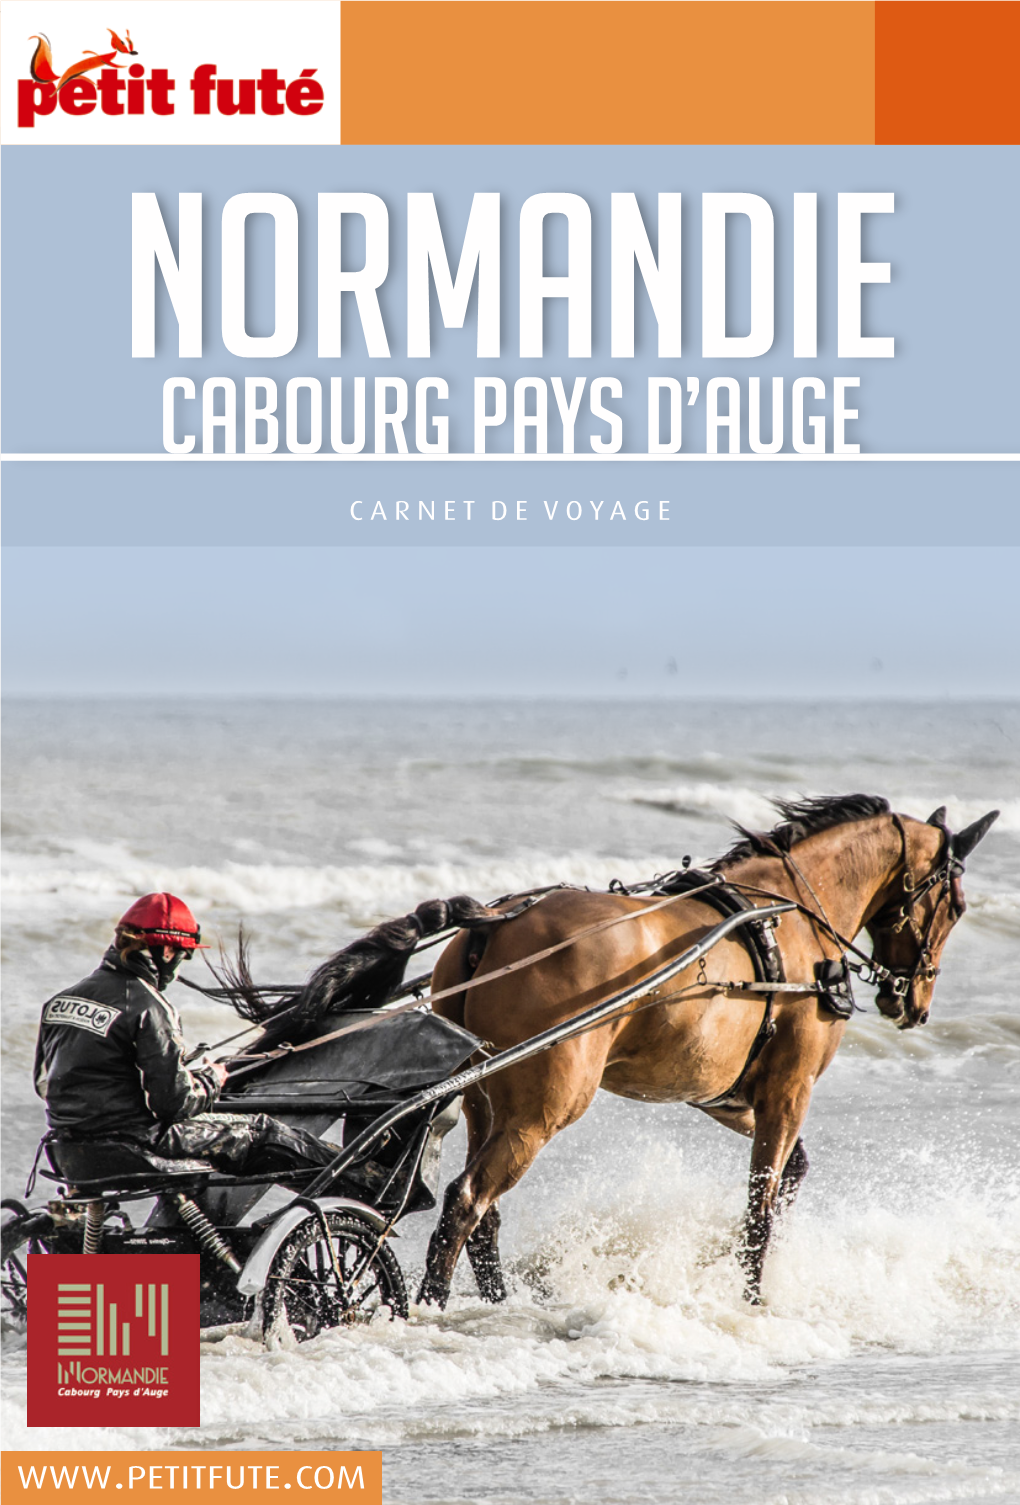 Normandie Cabourg Pays D’Auge Carnet De Voyage Normandie Cabourg Pays D’Auge Normandie Cabourg Pays